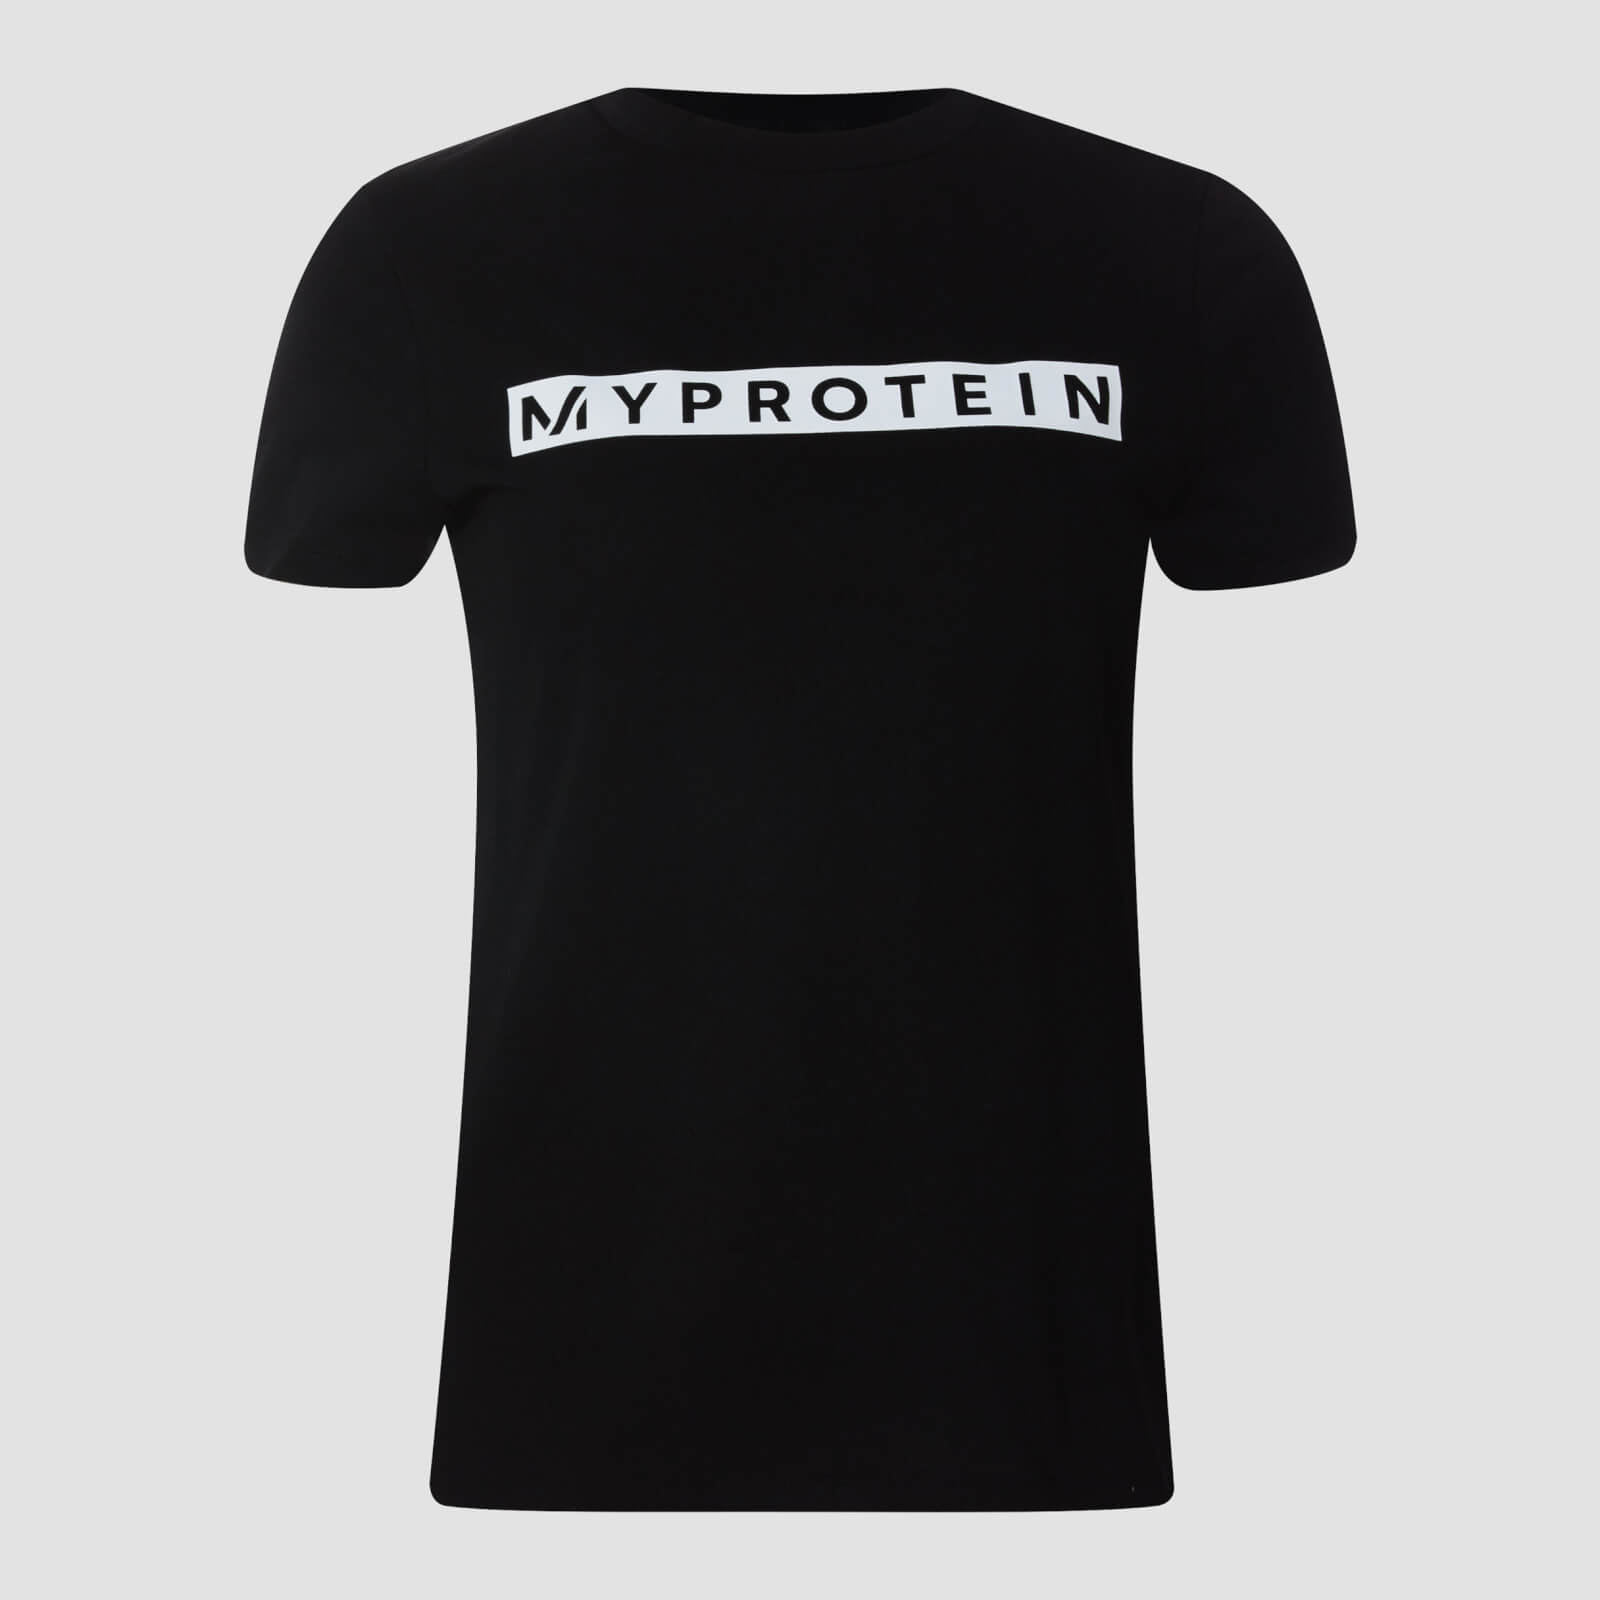 Myprotein T-shirt Originals da donna - Nero - XXS